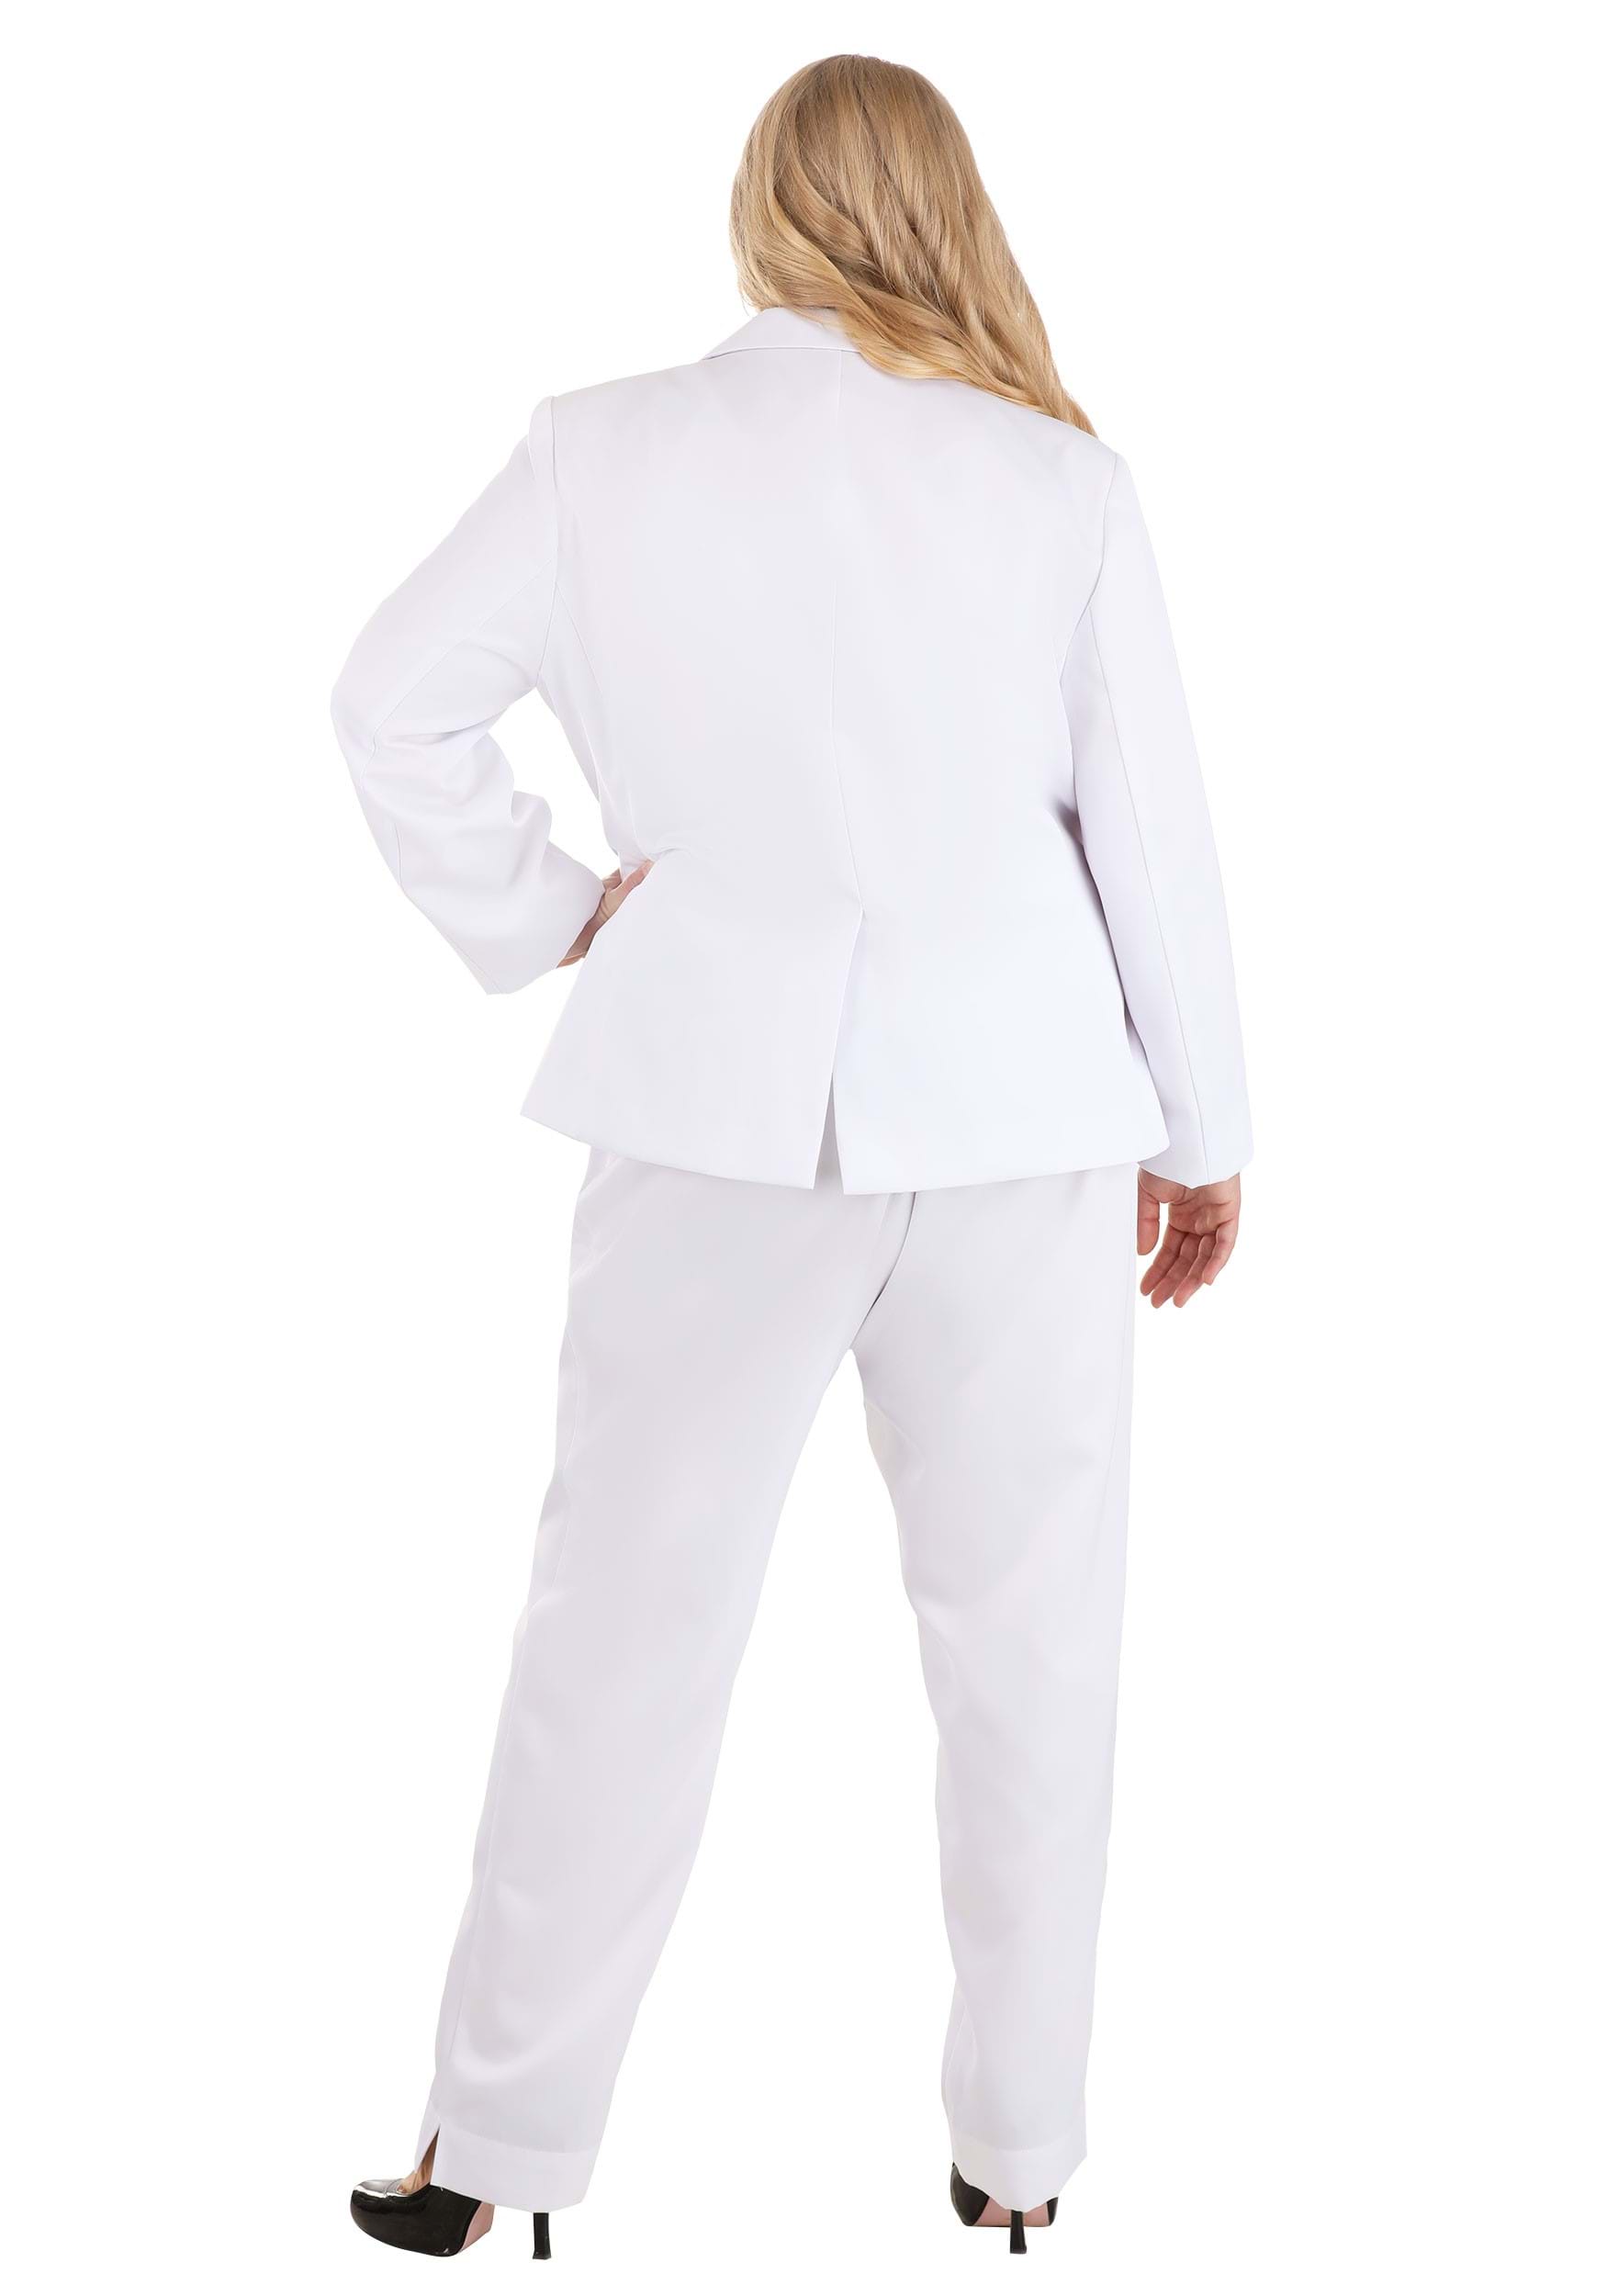 Women's Plus Size White Suit